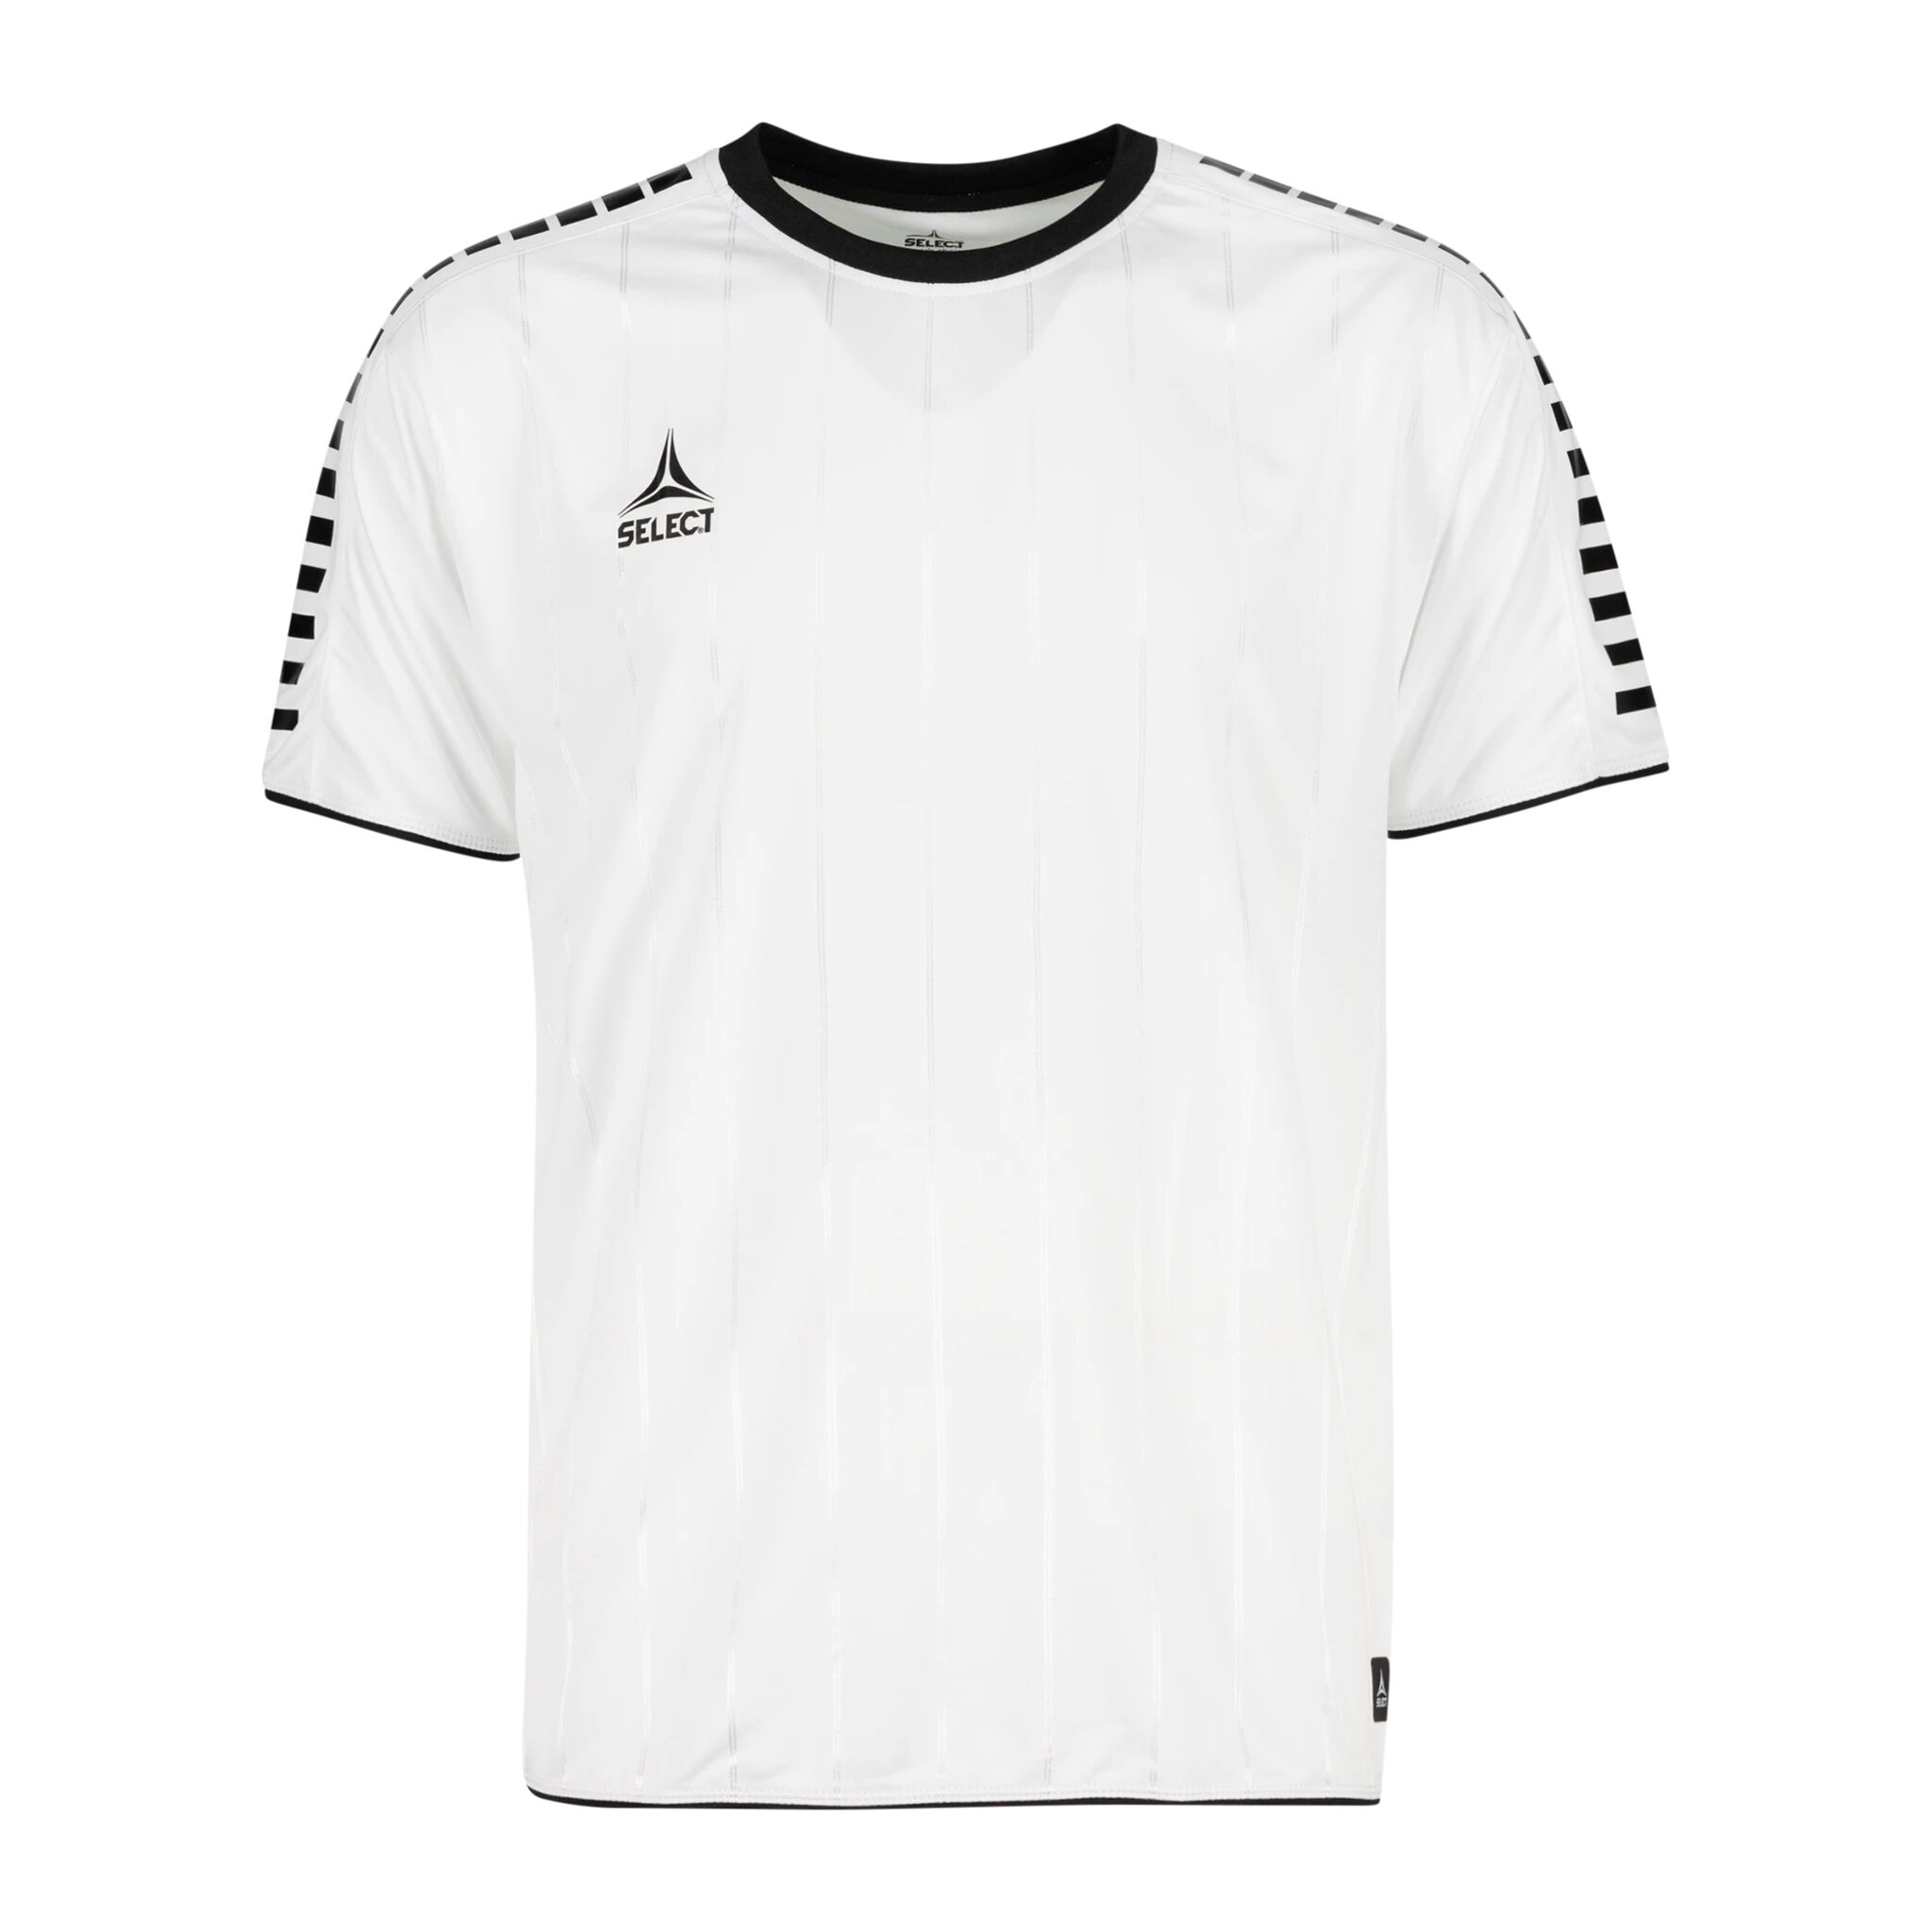 Select Player shirt S/S Argentina, fotballtrøye senior XL WHITE/BLACK